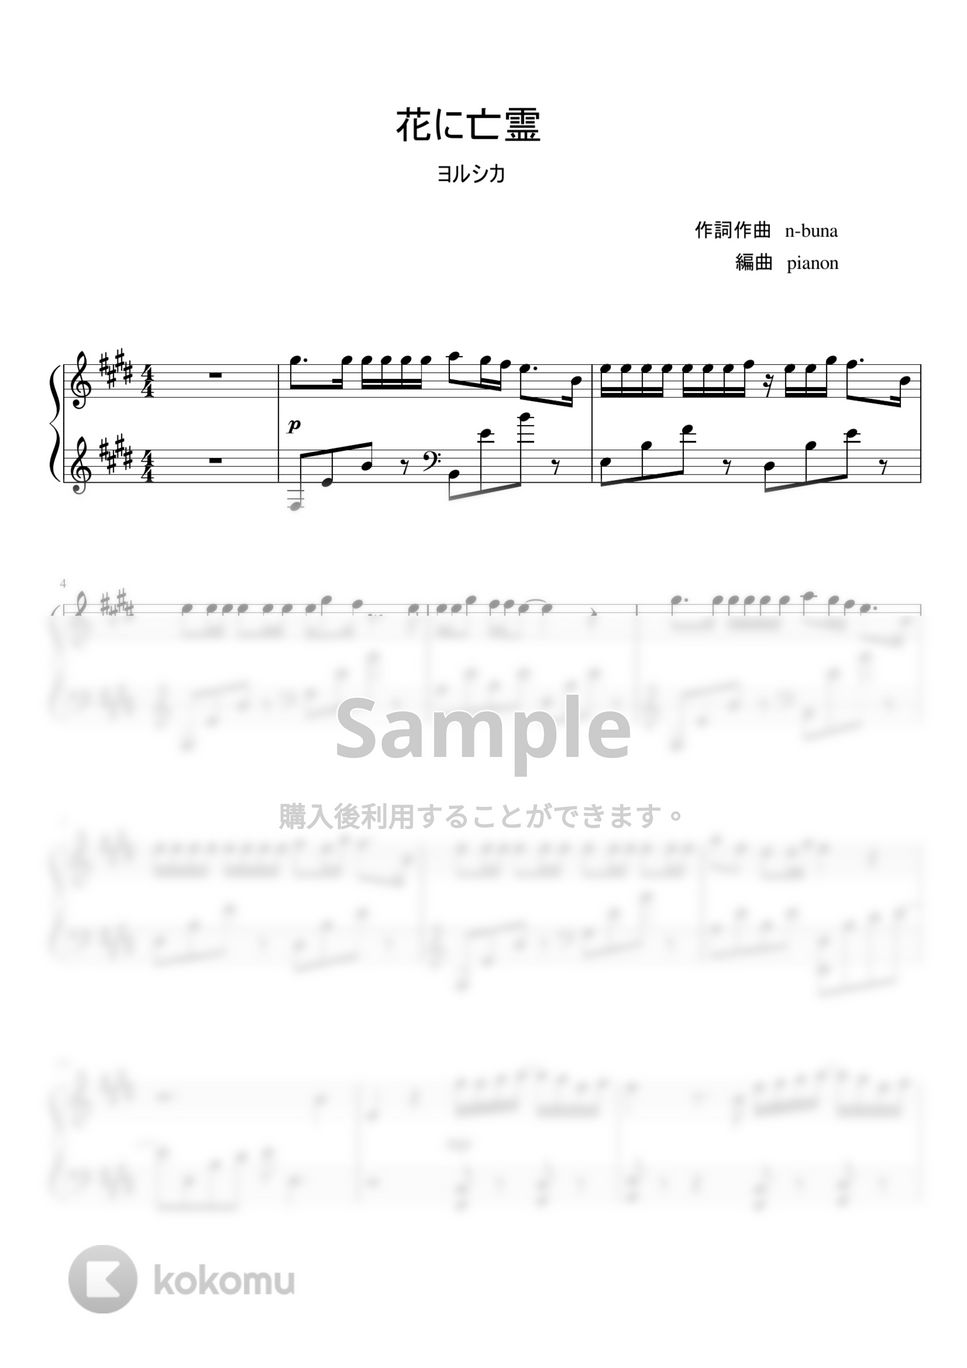 ヨルシカ - 花に亡霊 by pianon